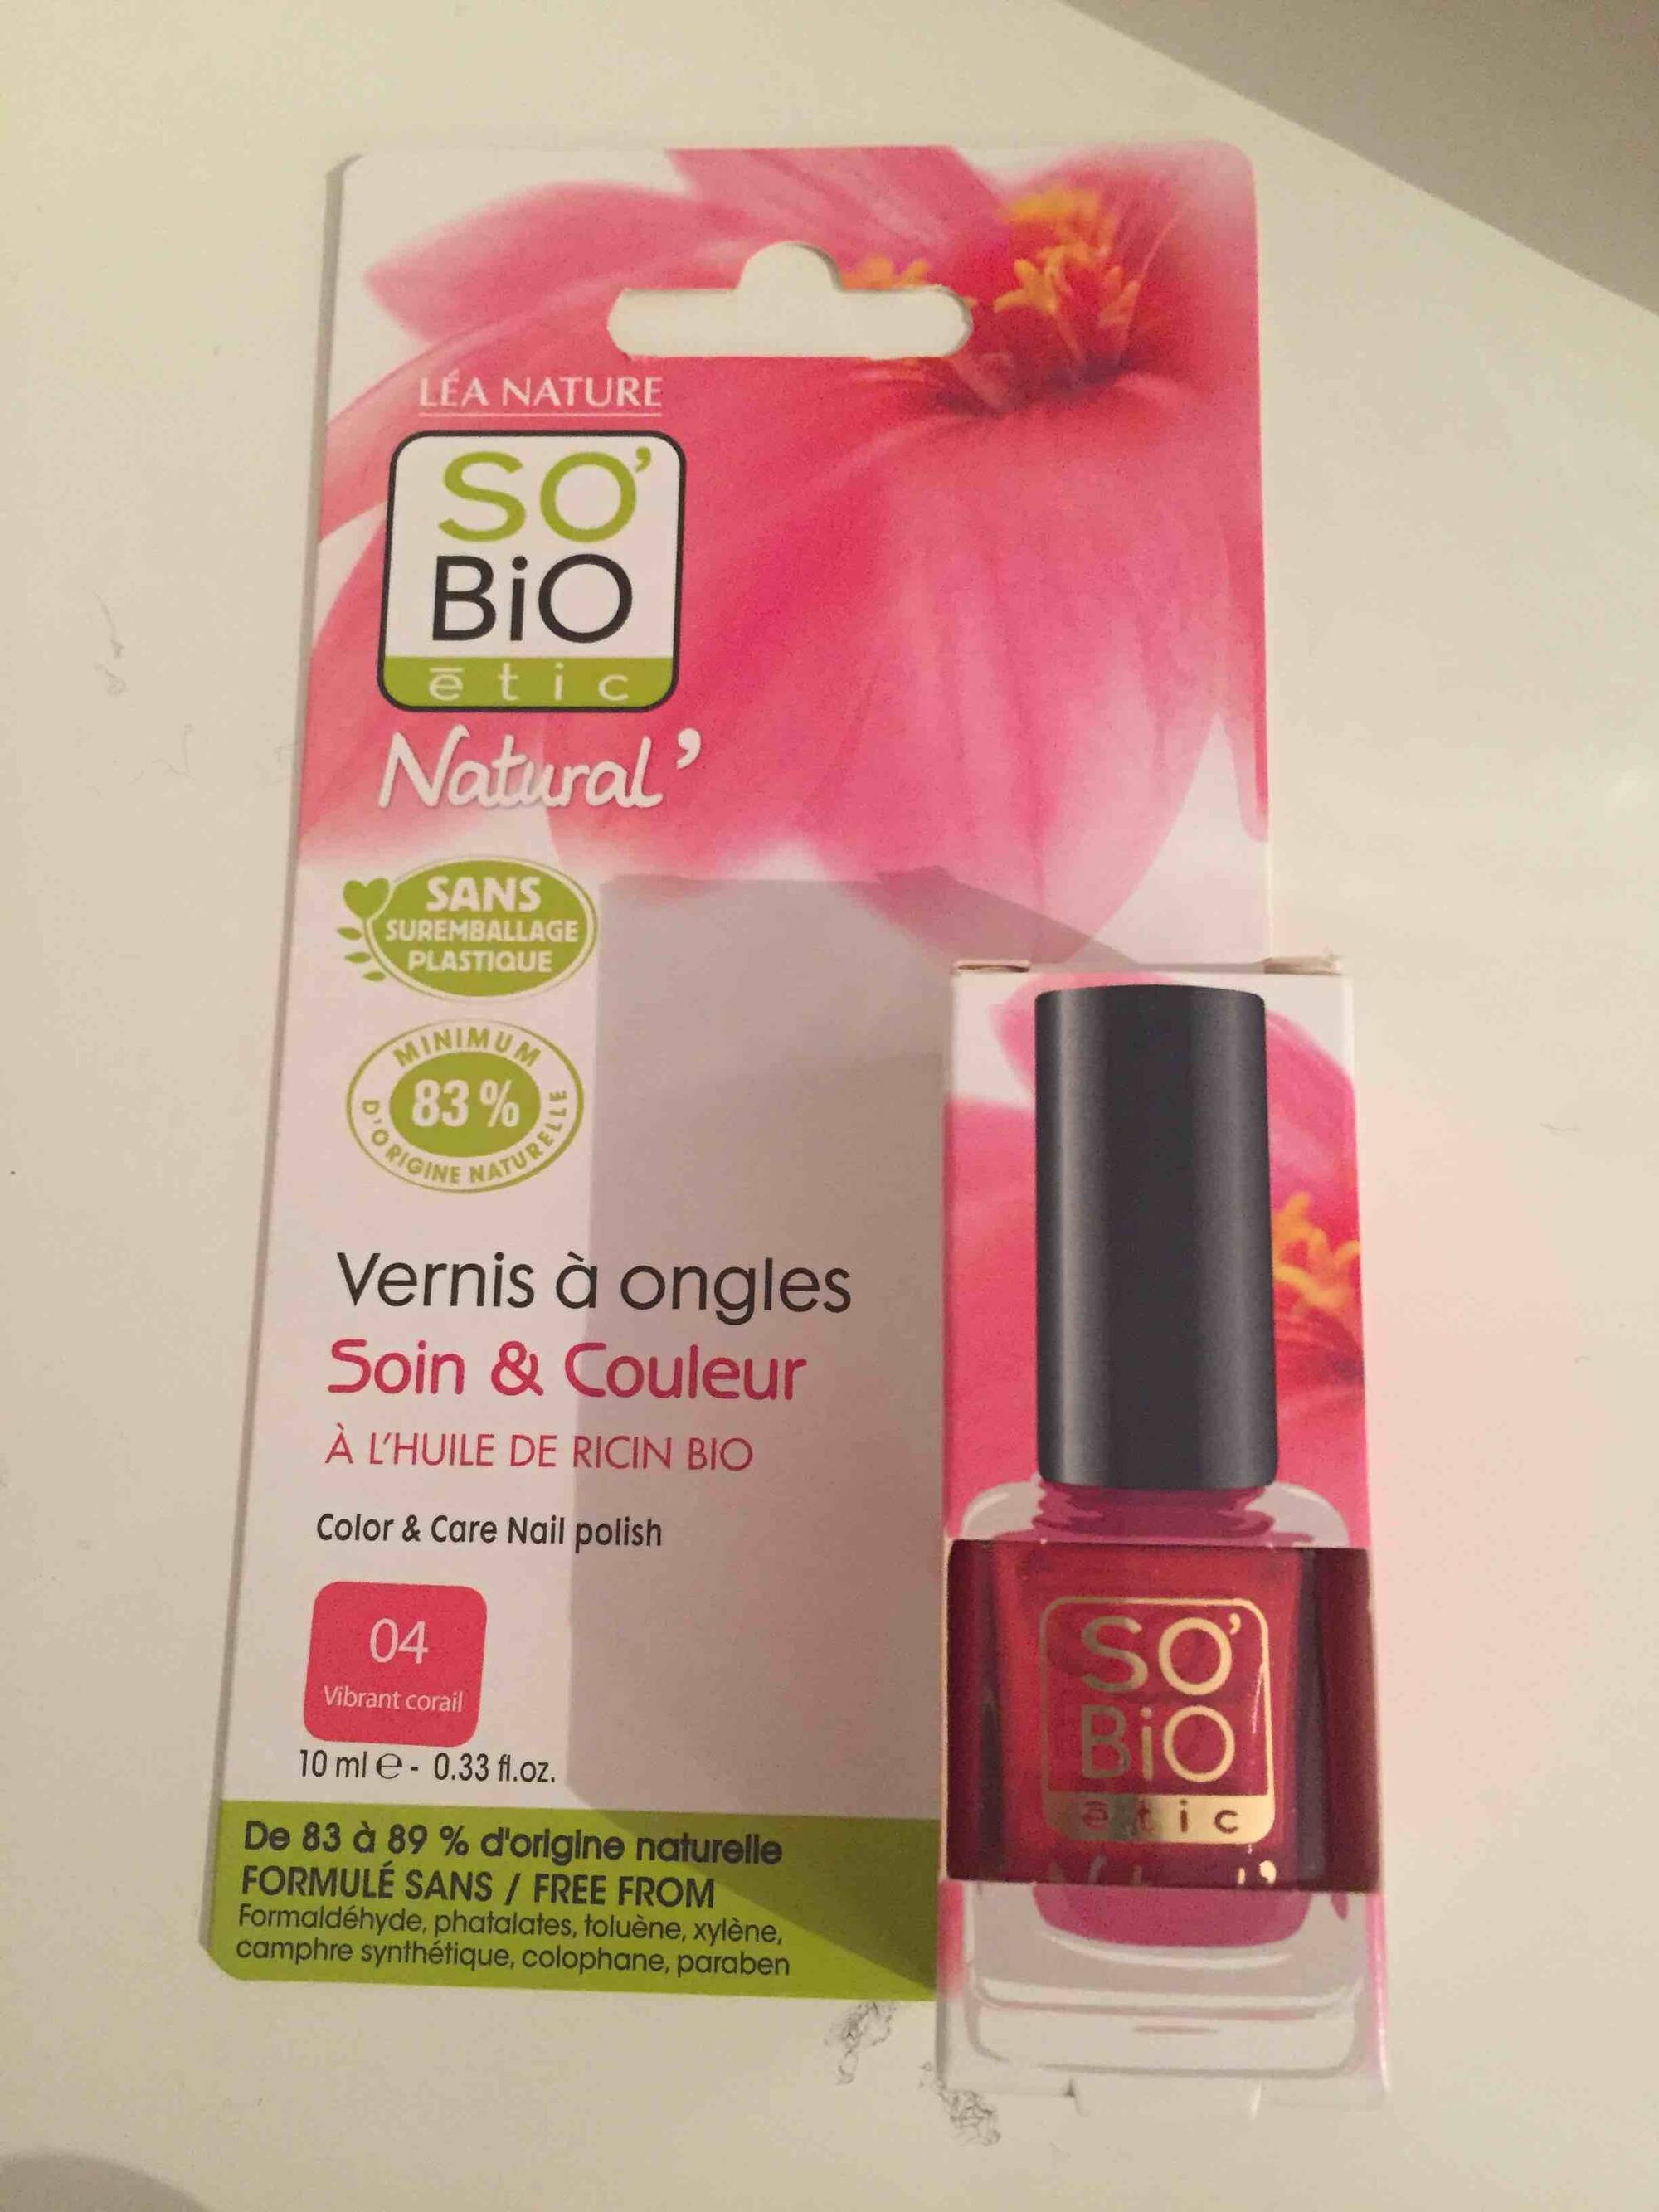 Vernis soin & couleur 01 séduisant rouge - So Bio Etic